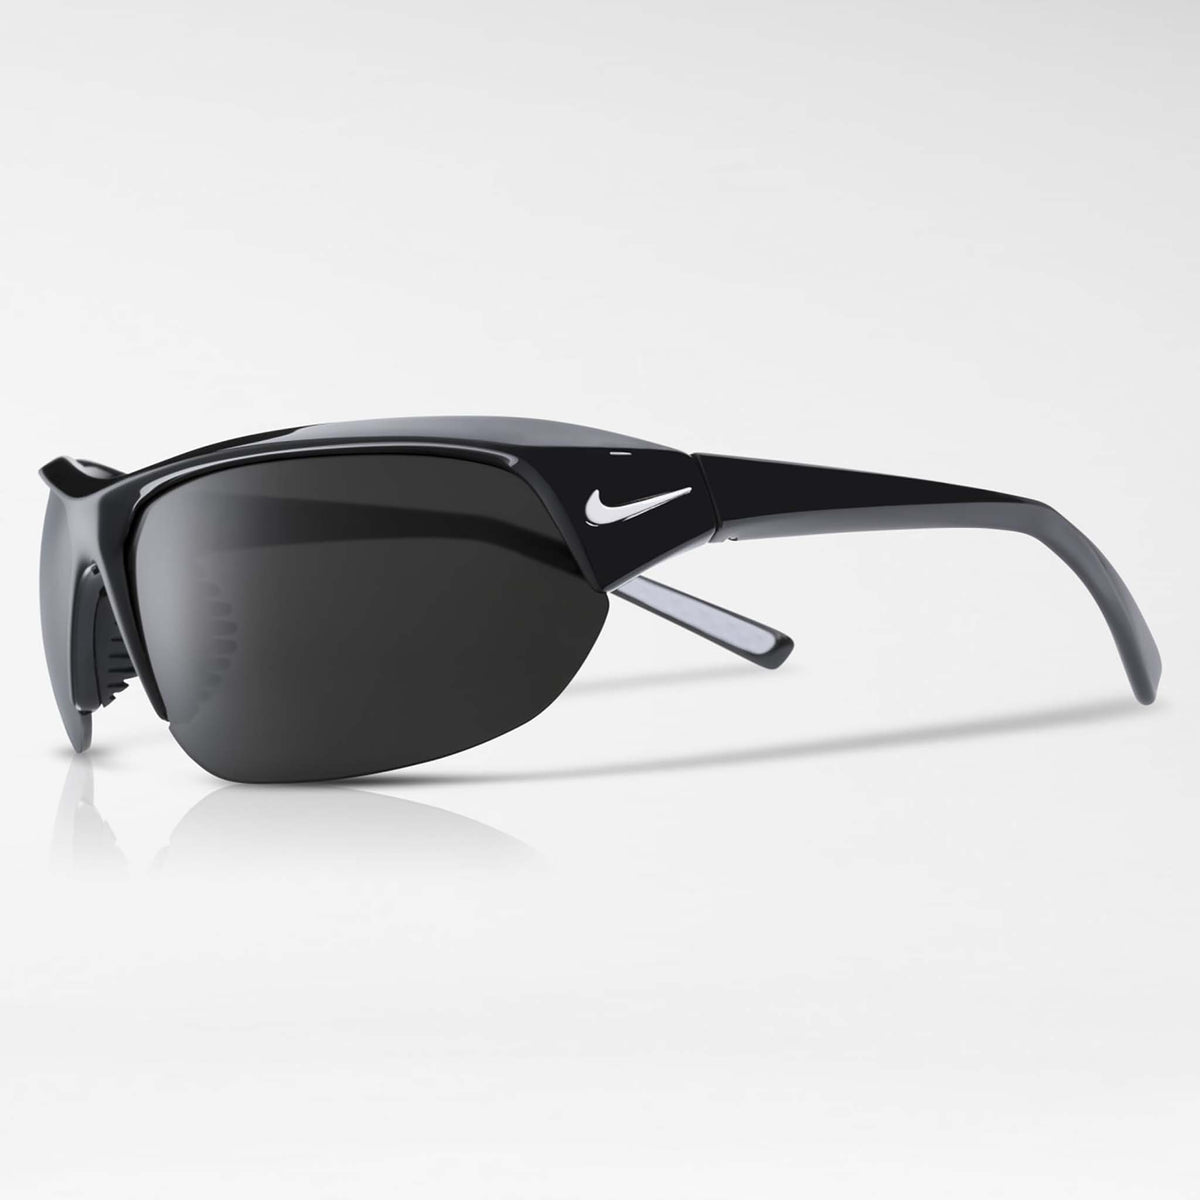 Nike Skylon Ace lunettes de soleil sport noir gris lateral